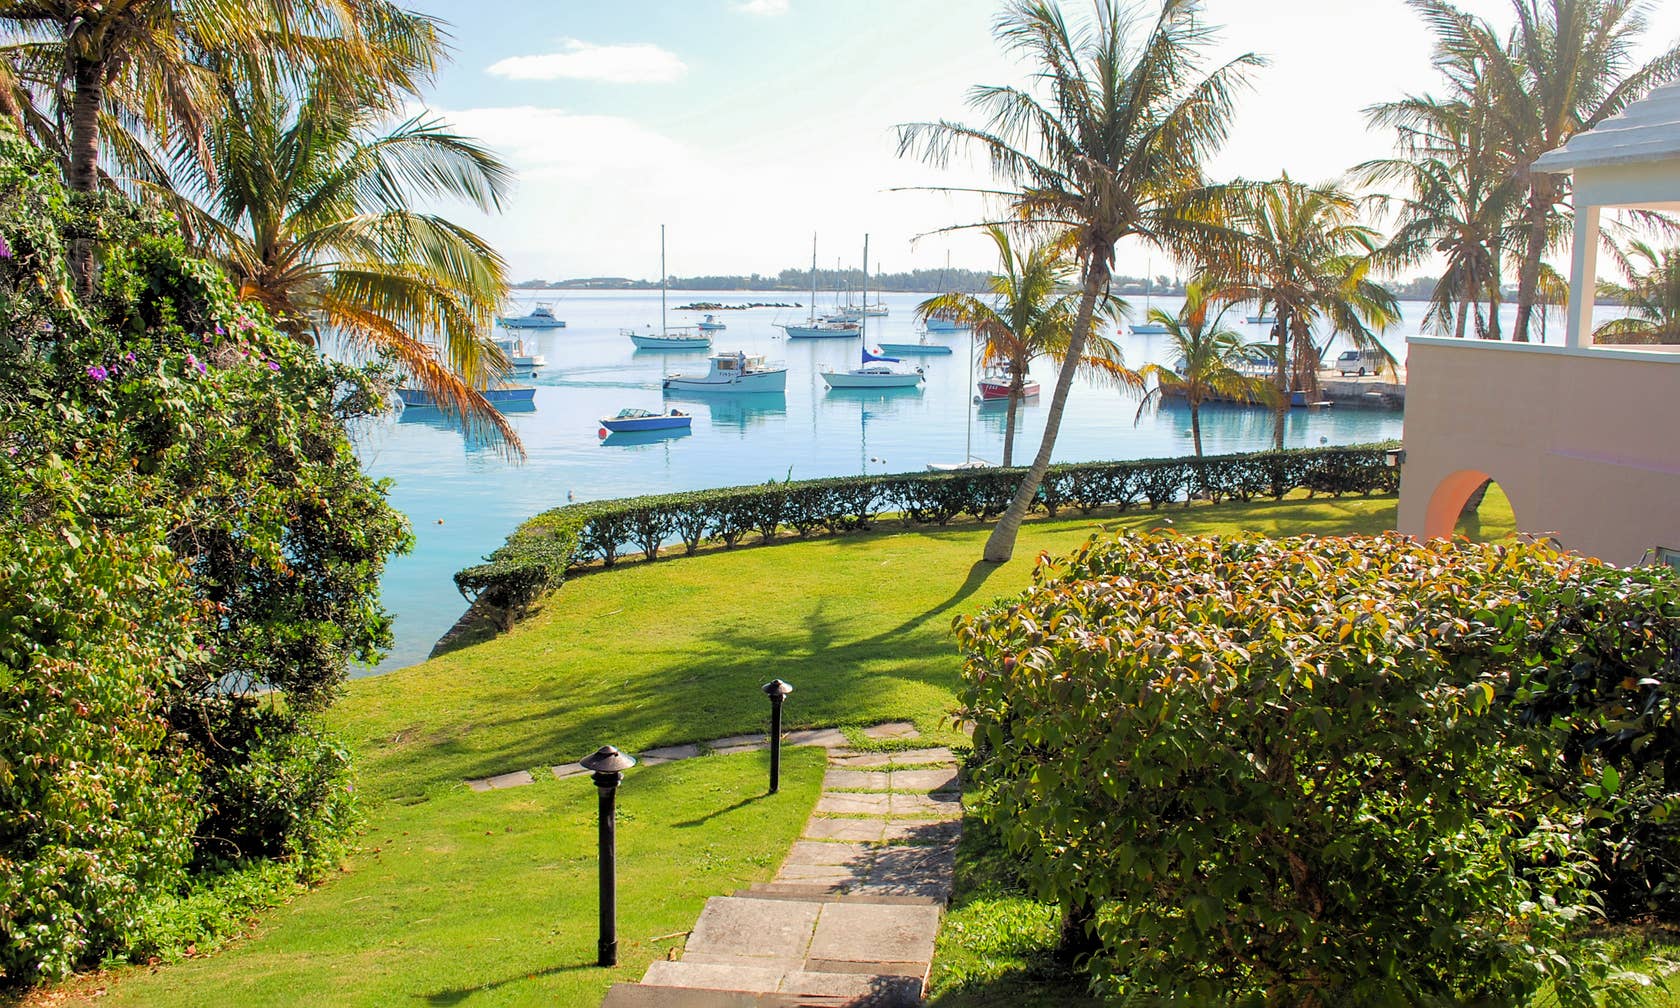 Case de vacanță în Bermuda